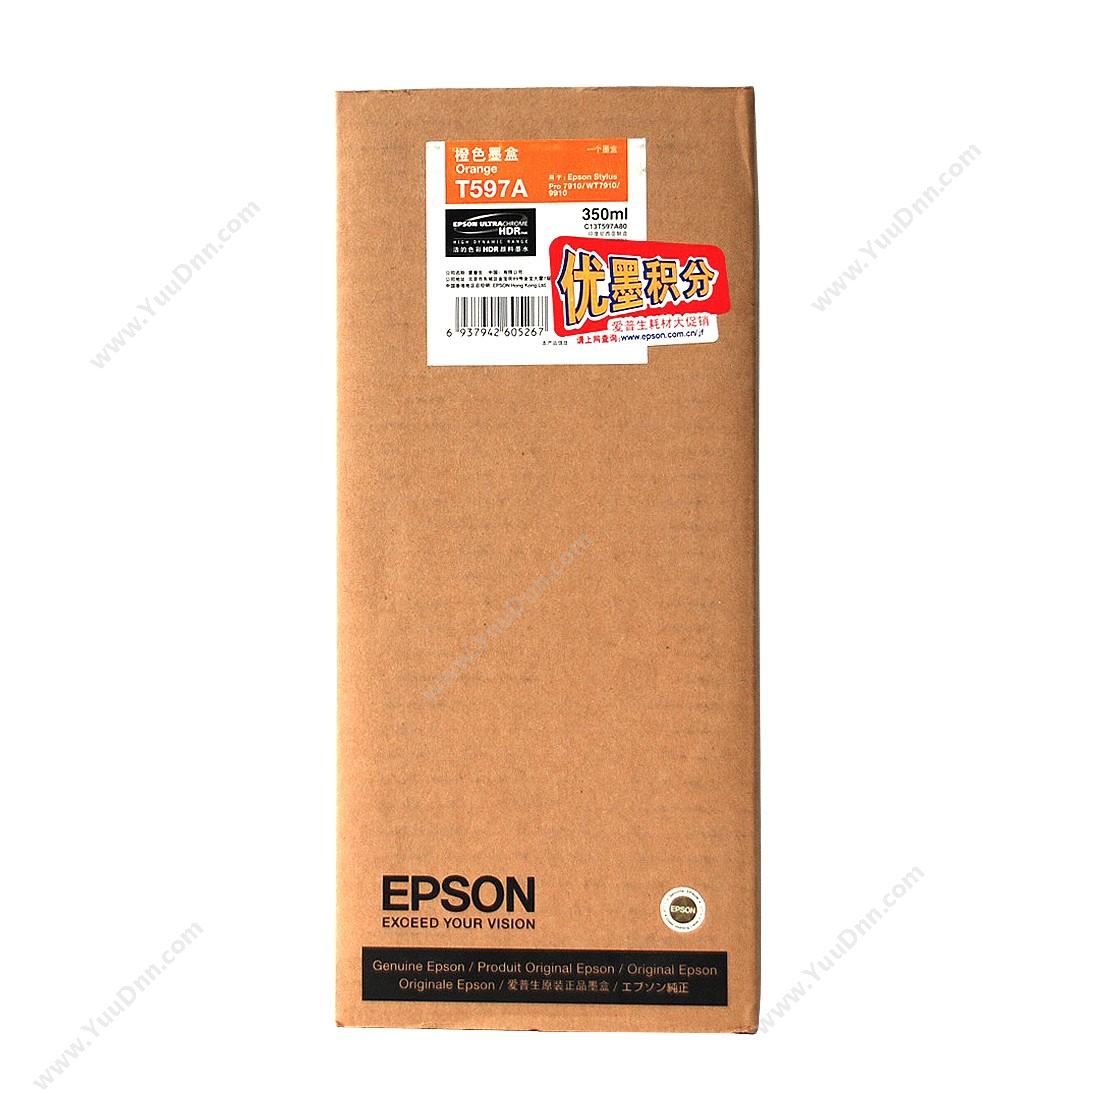 爱普生 Epson Pro9910桔墨350ml（C13T597A80） 墨盒